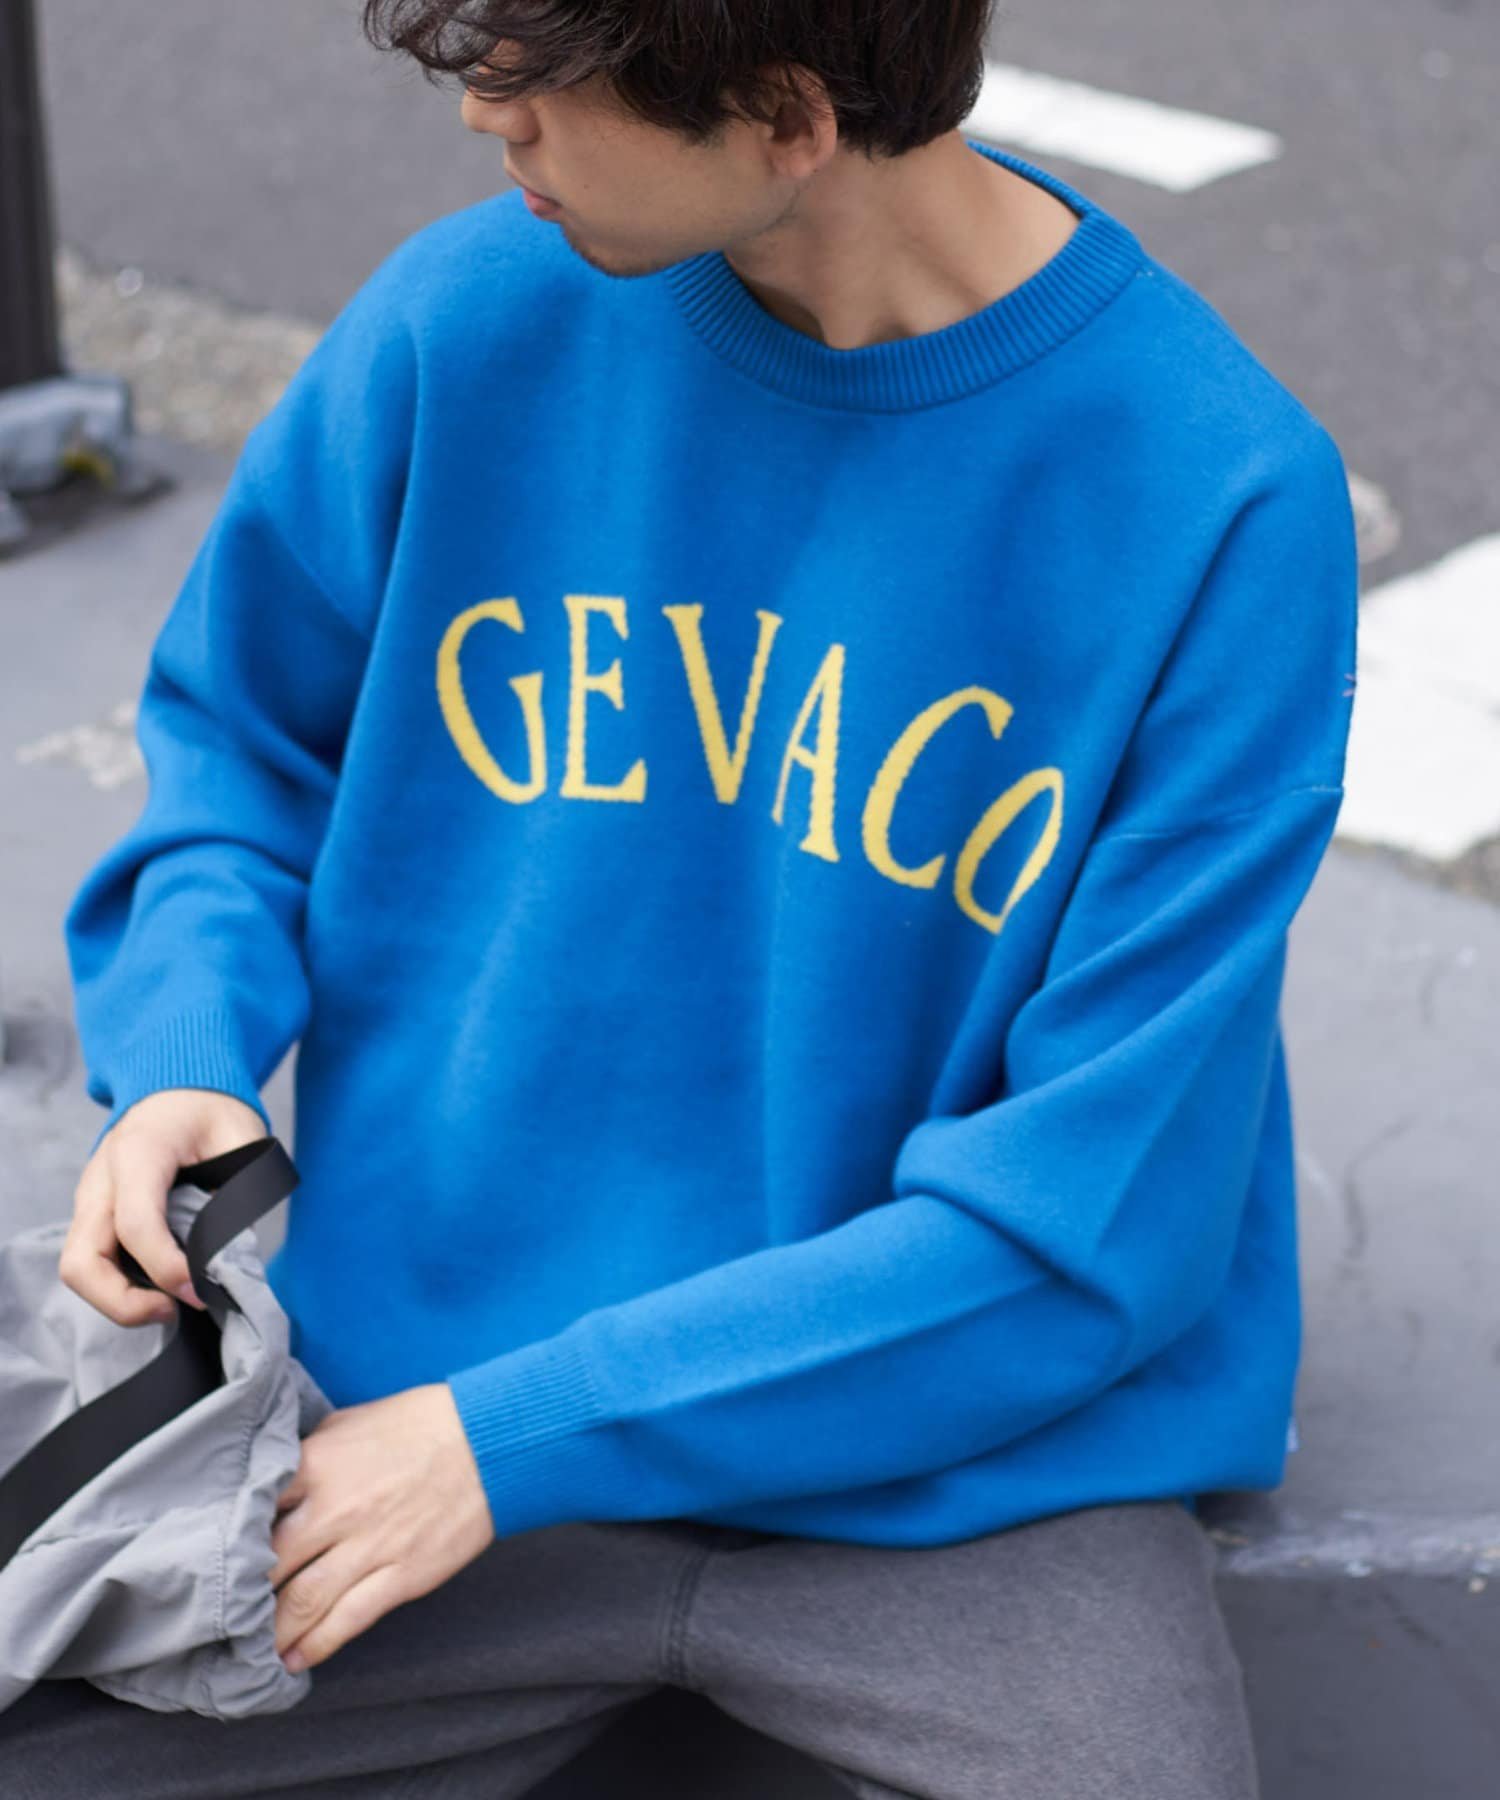 GEVACO/ゲバコ】アーチロゴジャガードセーター | CIAOPANIC TYPY